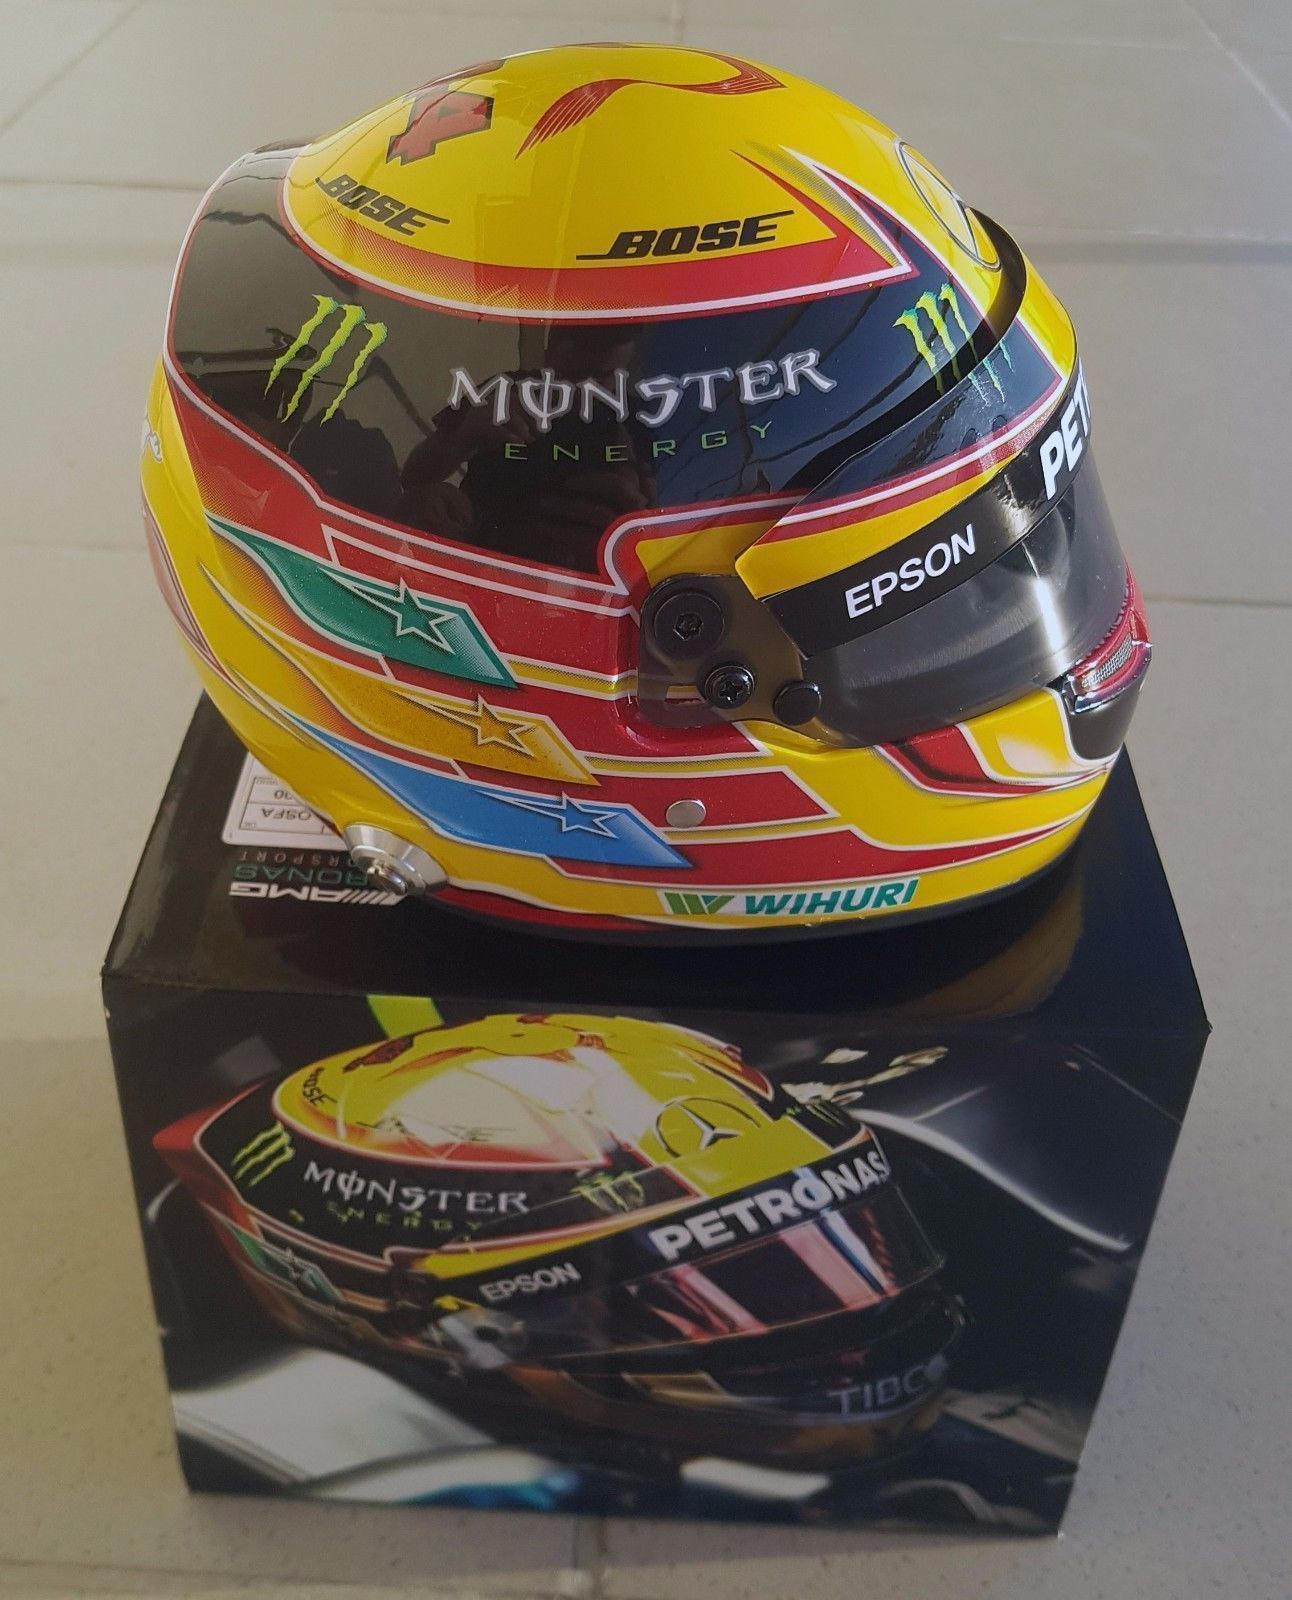 Mercedes Casque Lewis Hamilton 2017 Mini Helmet 1/2